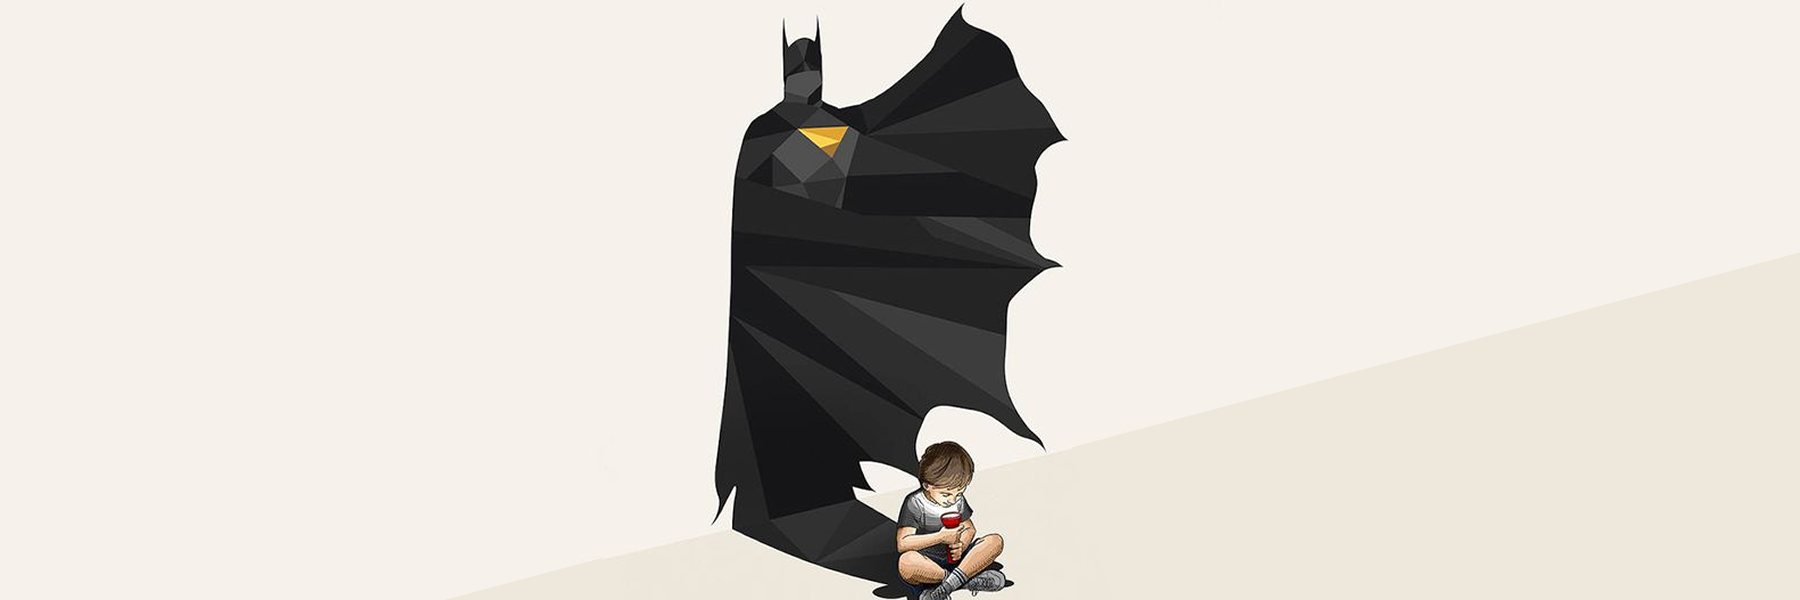 Eu, o Batman e o dia dos pais - Escrevida